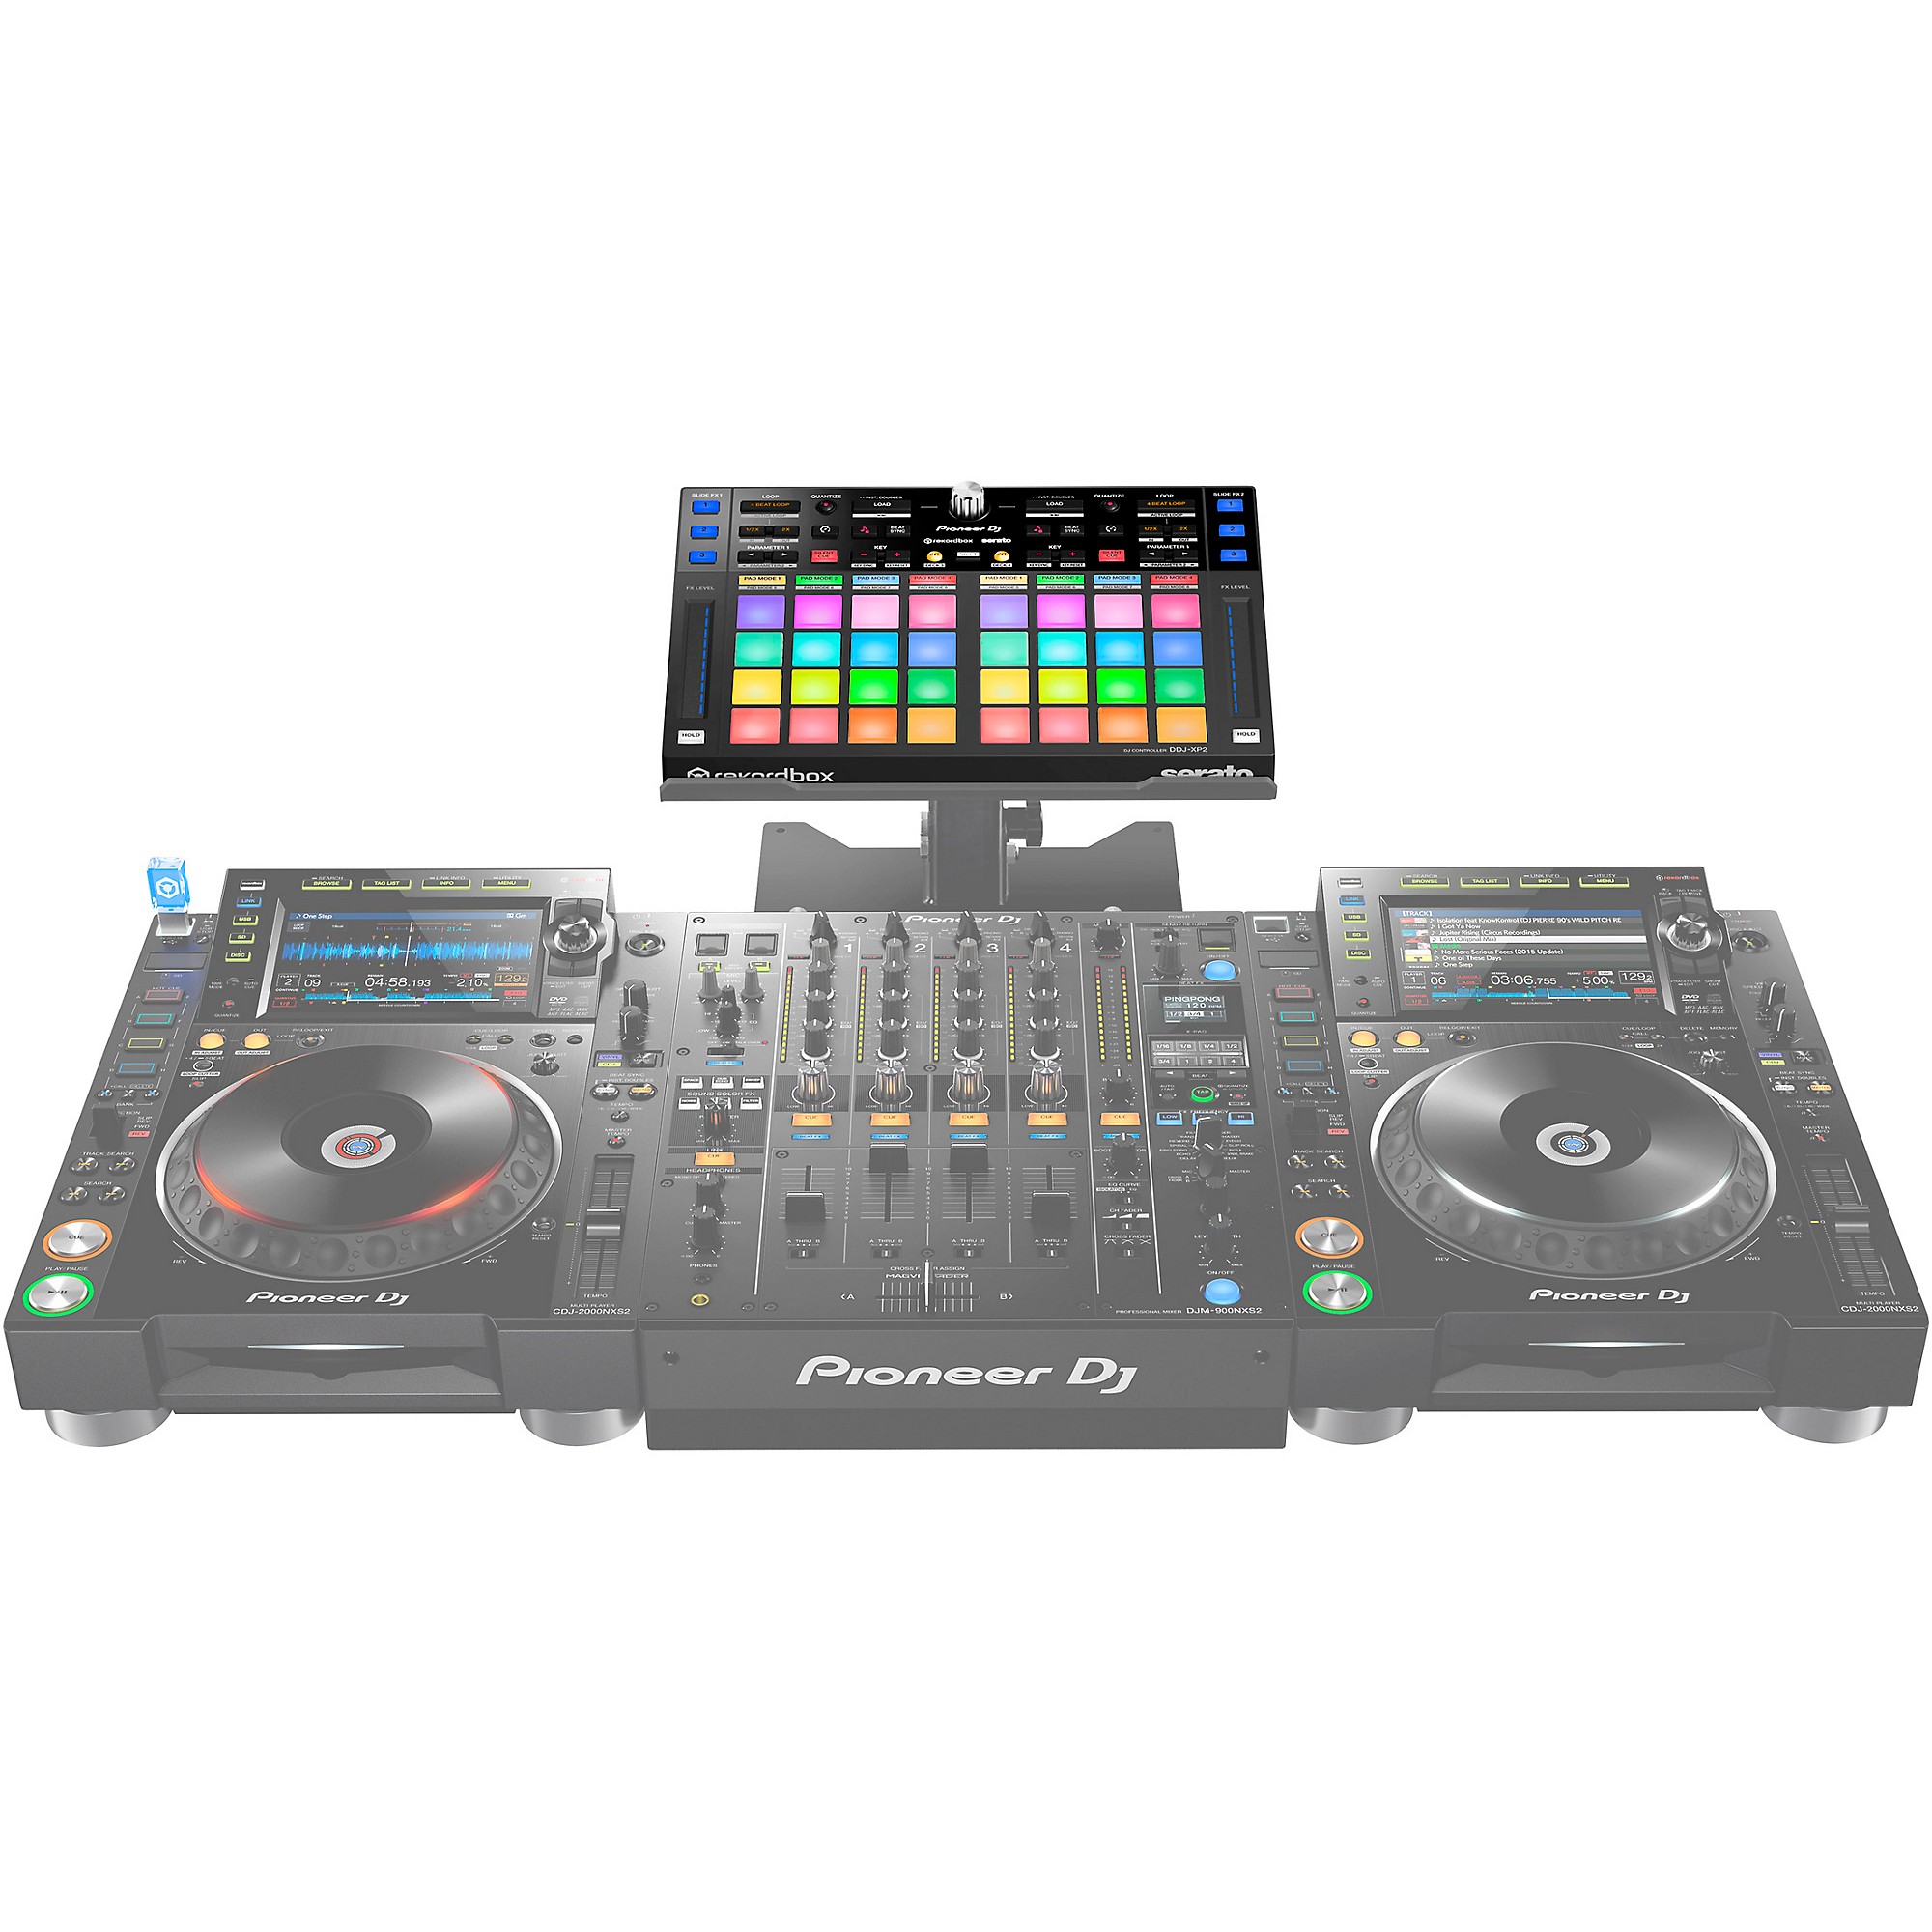 Pioneer DJ DDJ-XP2 - Add-on controller for rekordbox dj and Serato DJ Pro